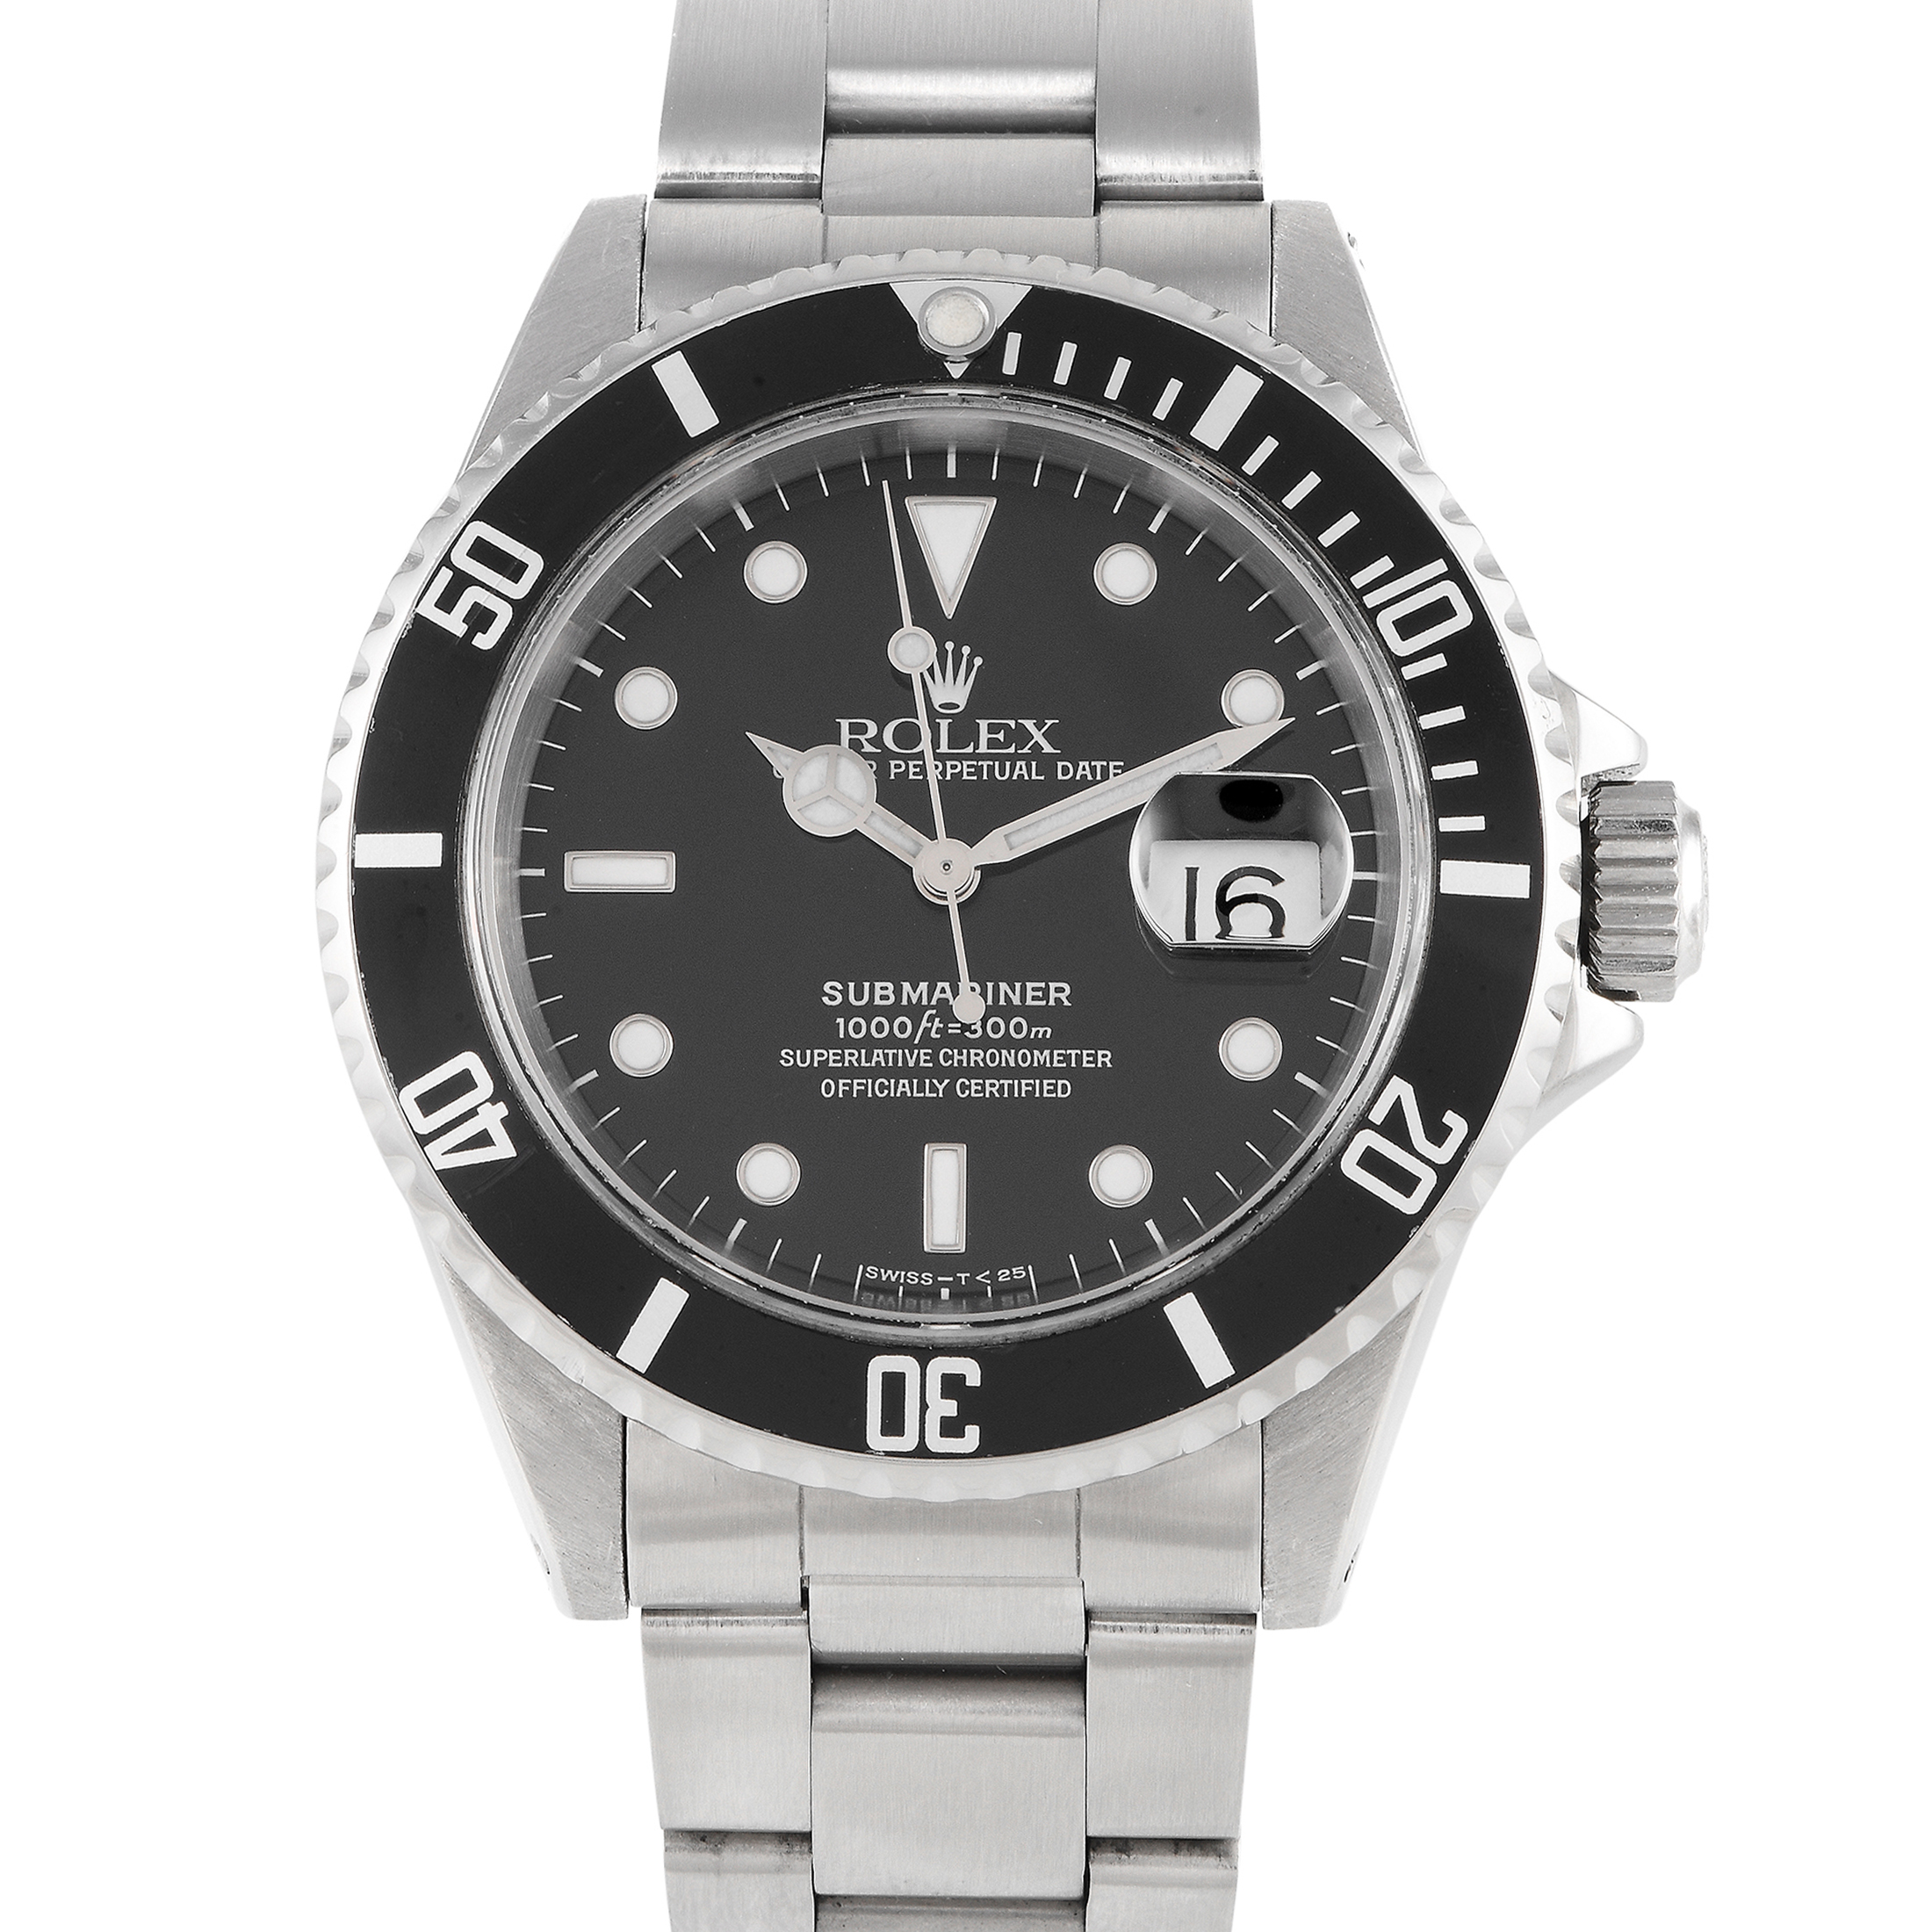 Rolex Submariner Date Watch 16610